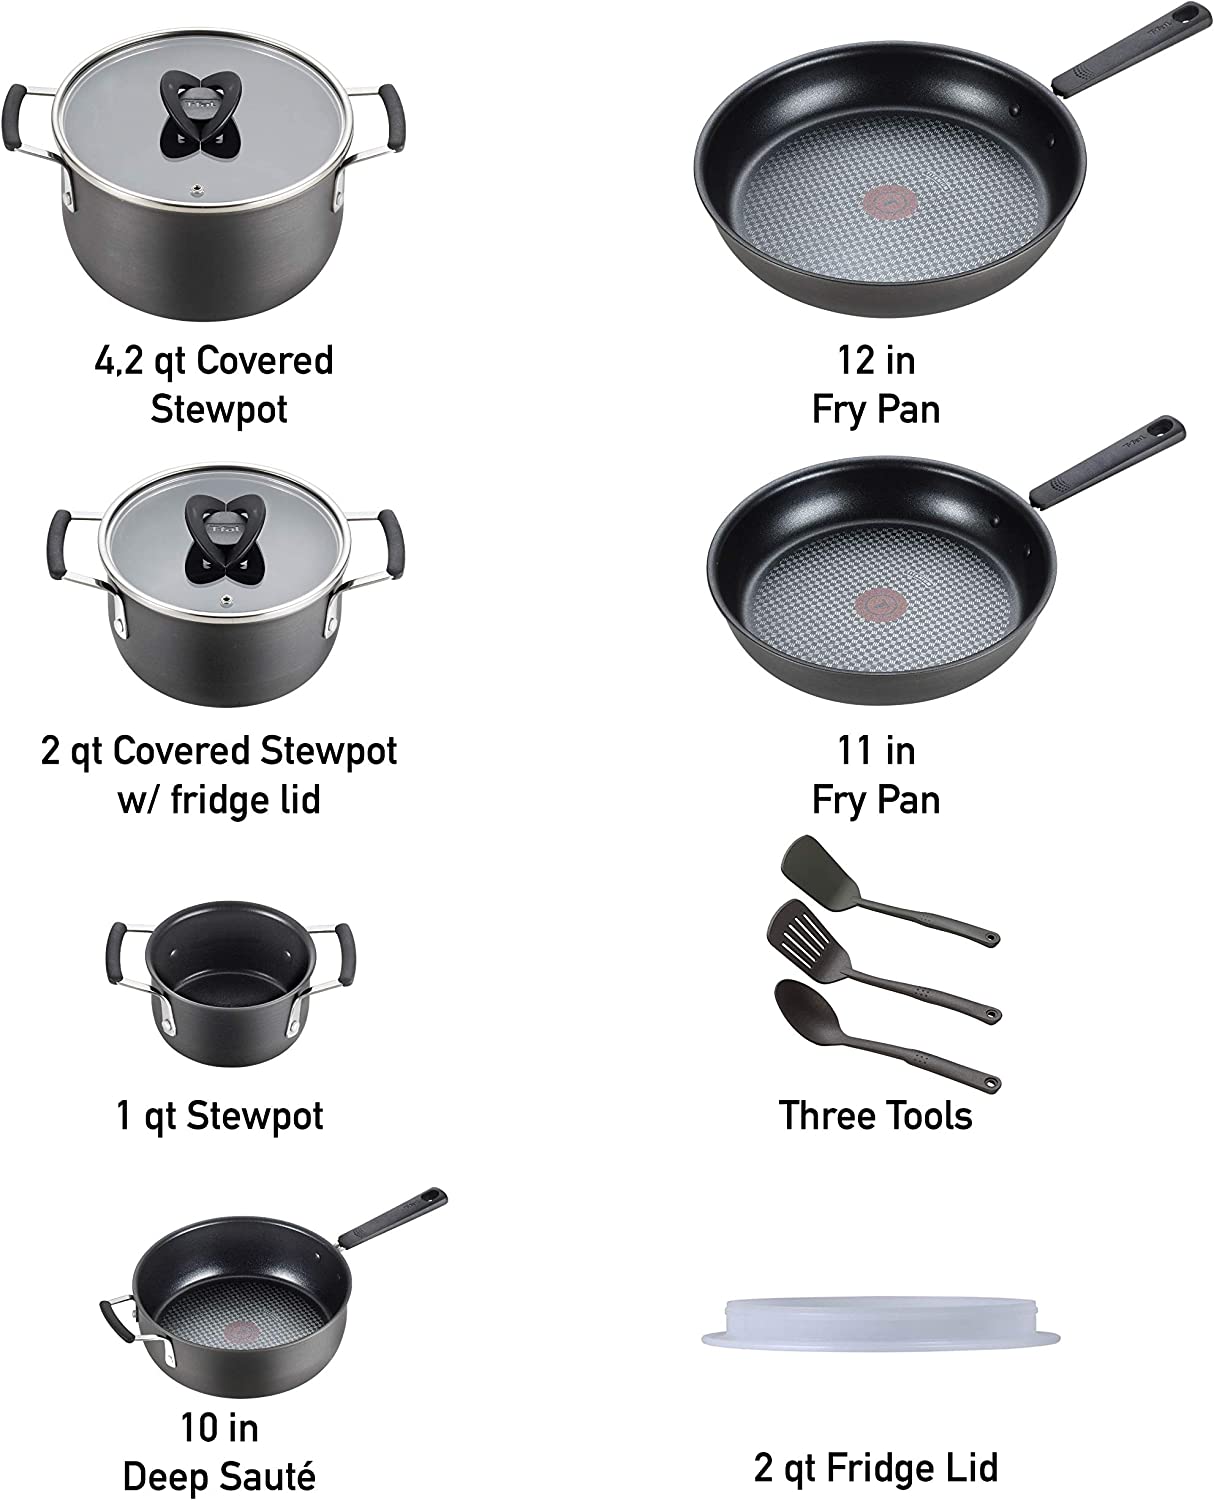 ست قابلمه و تابه 12 تکه نچسب تفال مدل  T-fal Anodized cookware- ارسال 15 الی 20 روز کاری